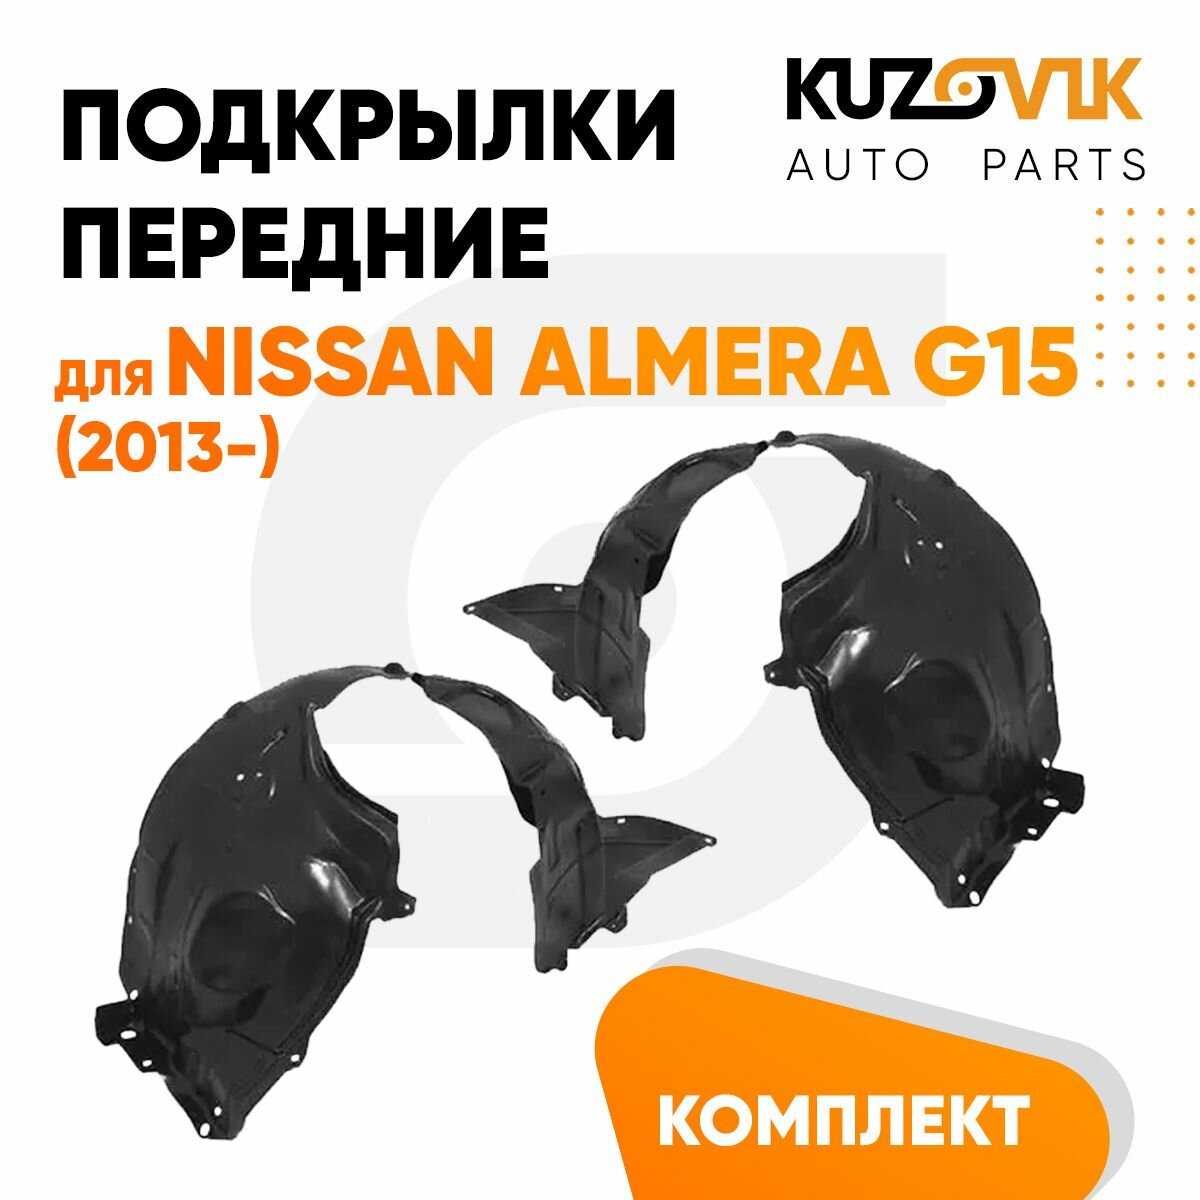 Подкрылки передние для Ниссан Альмера Nissan Almera G15 (2013-) комплект левый + правый 2 штуки, локер, защита крыла